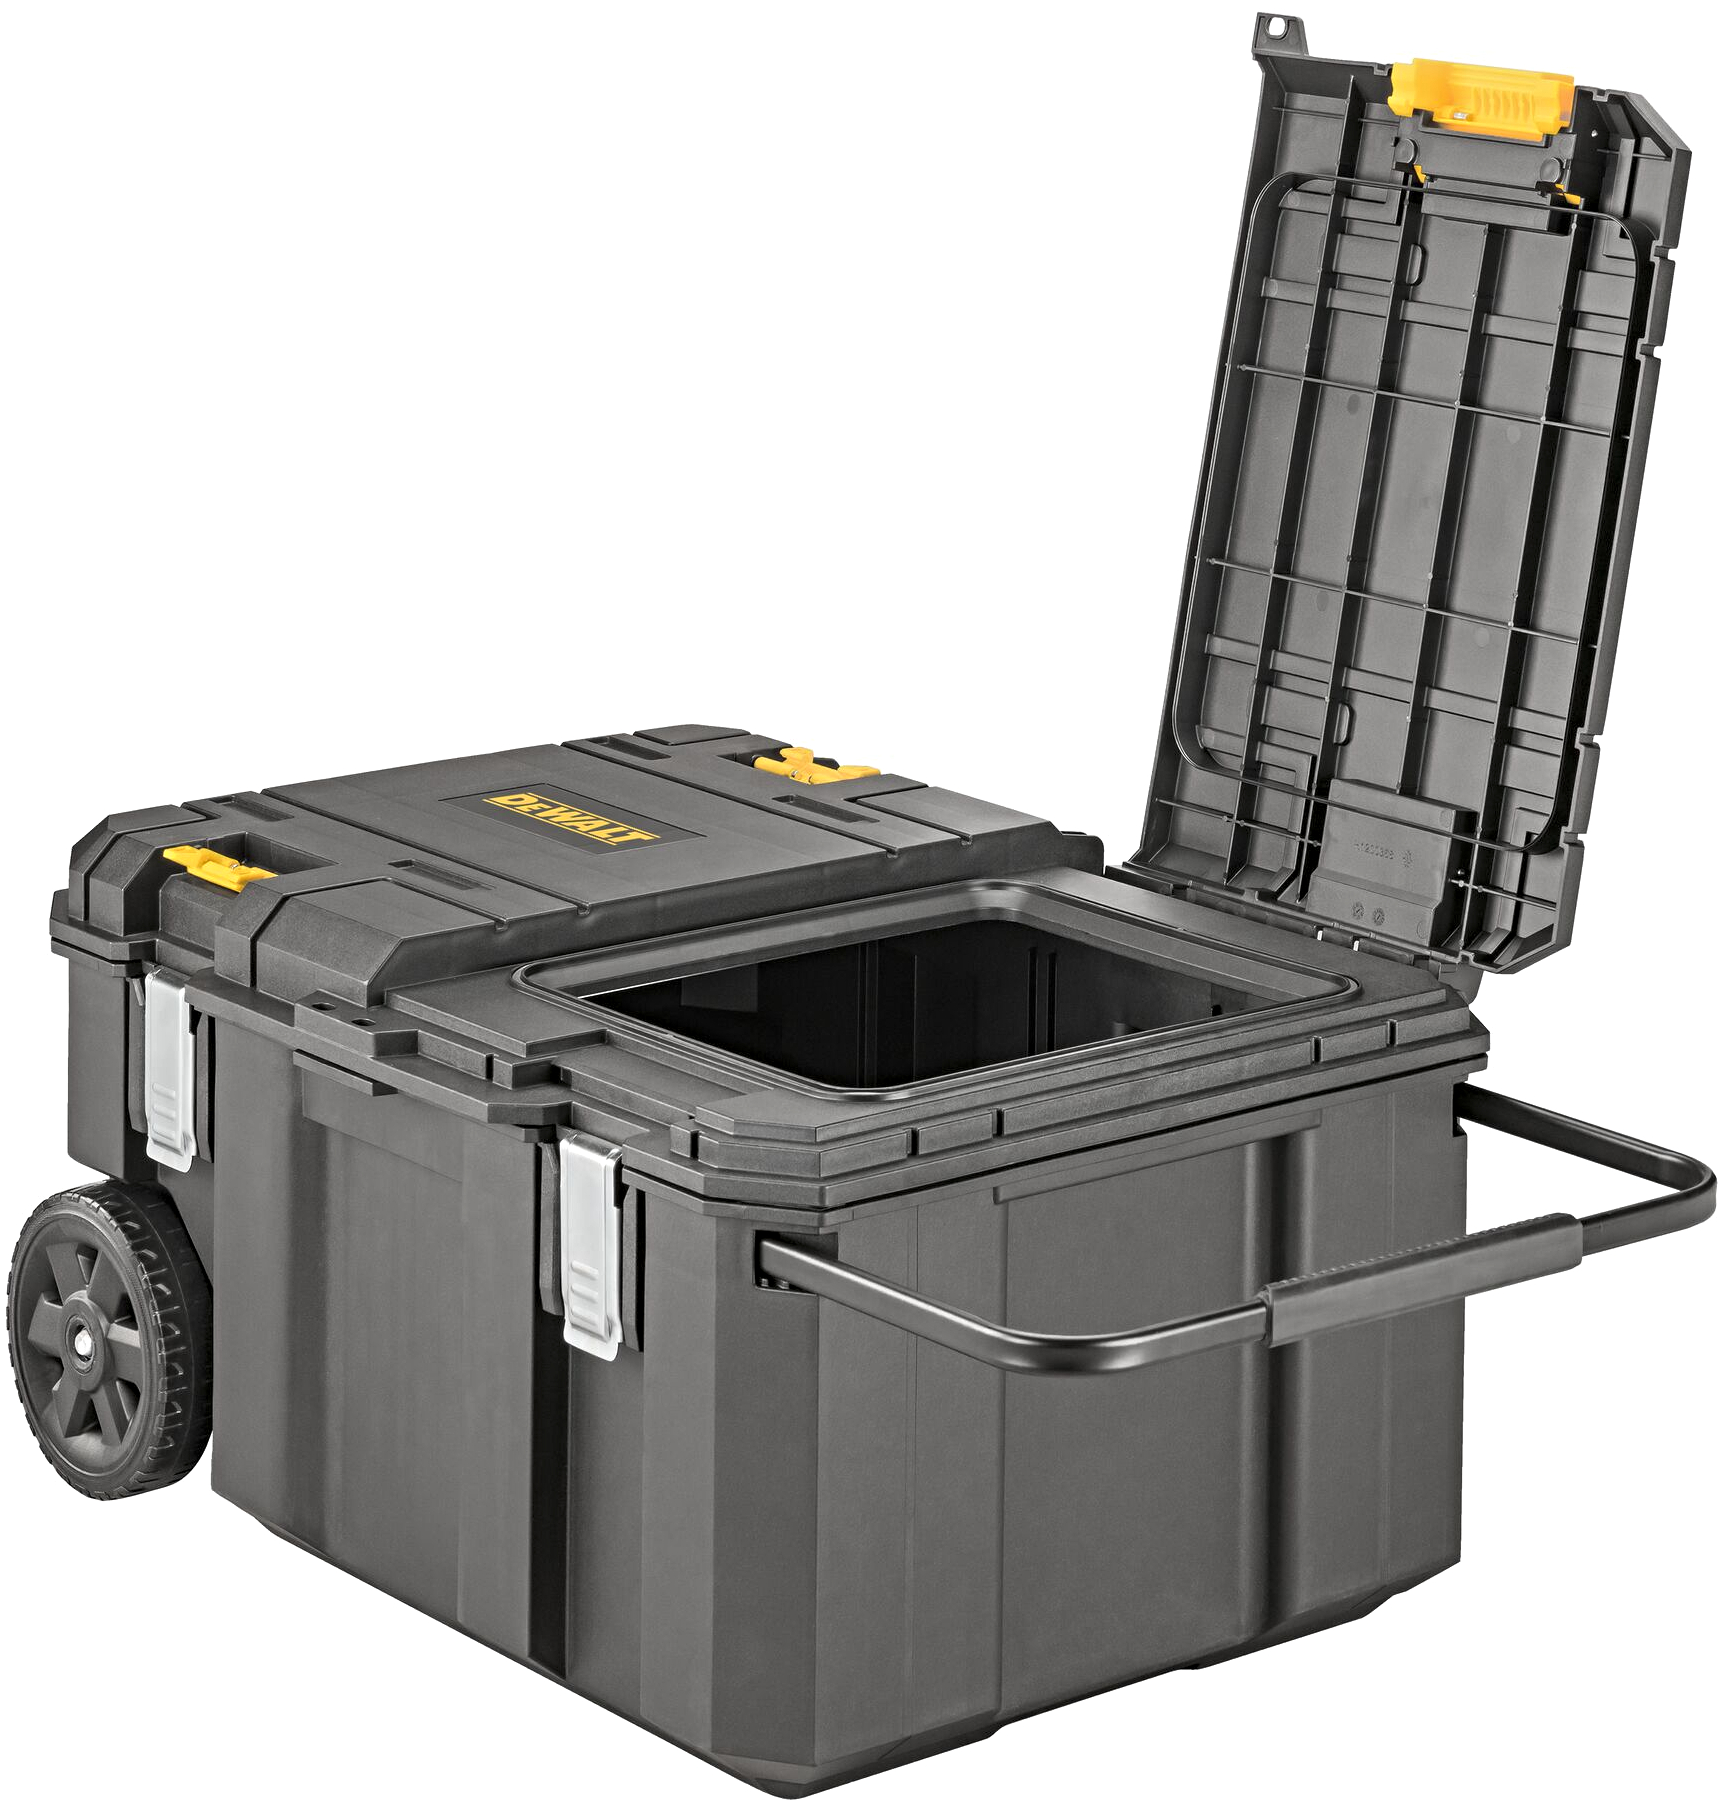 DeWALT DWST17871-1 pojízdný kufr TSTAK s kolečky